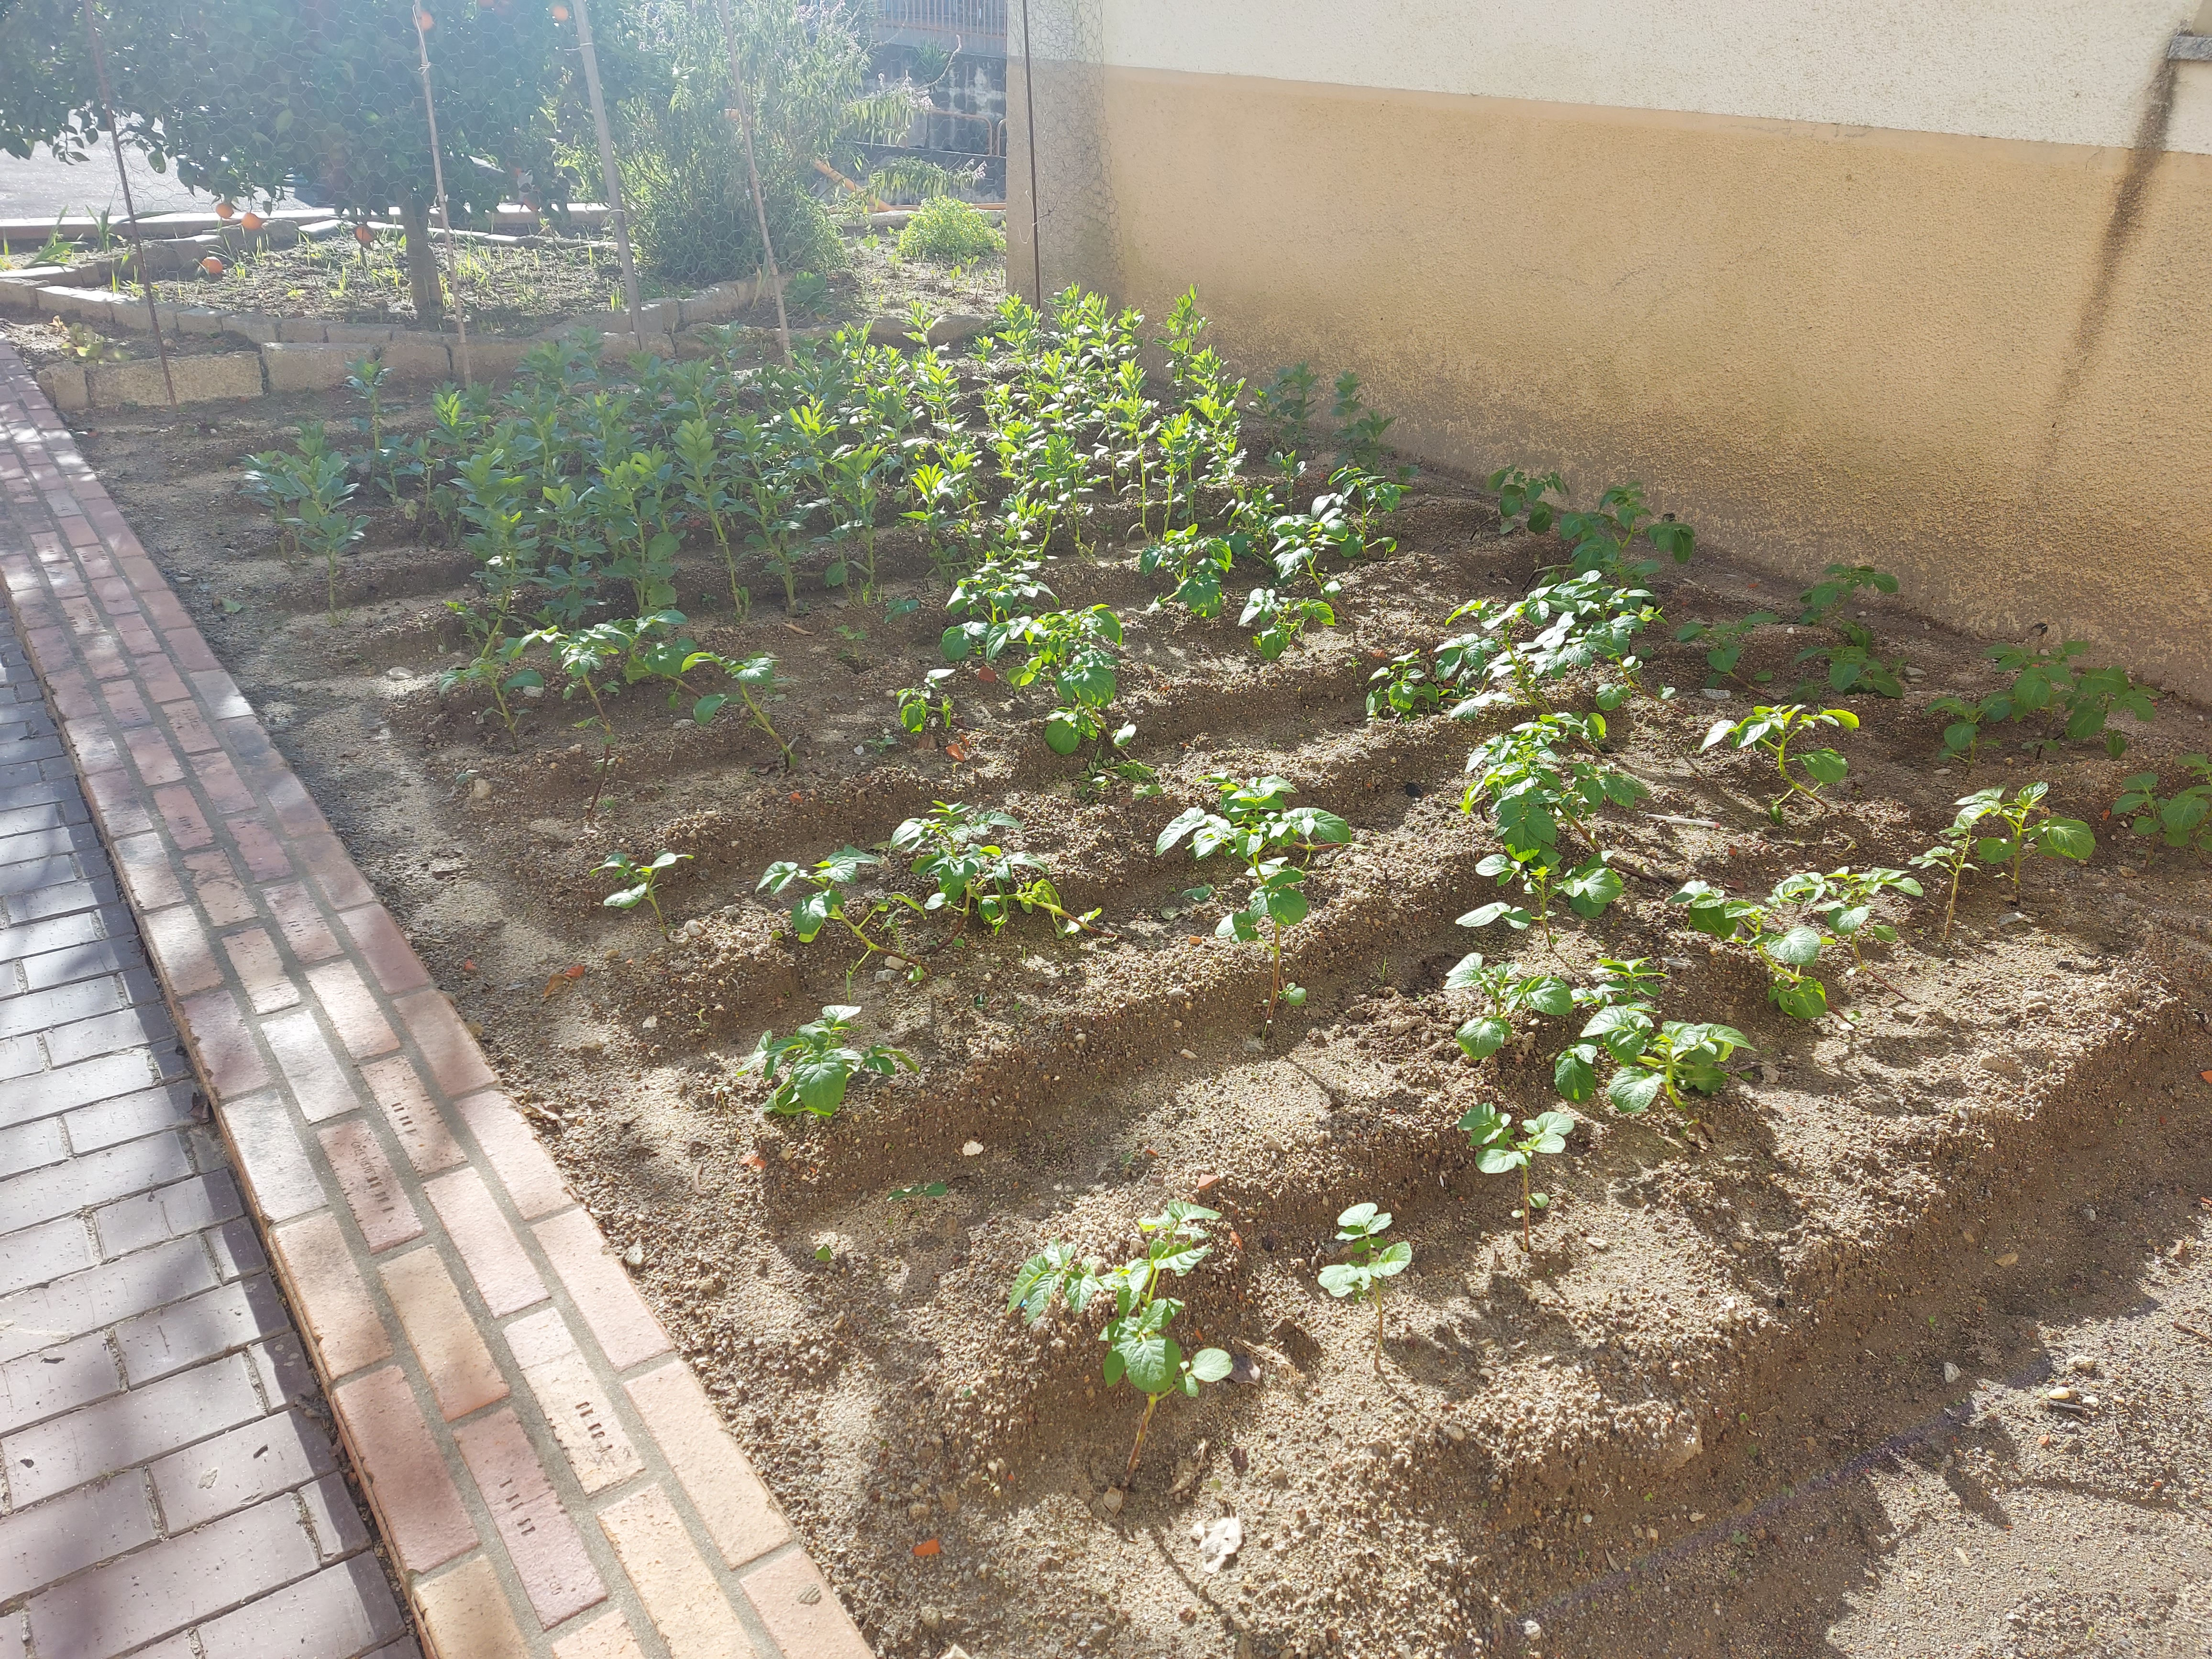 Plantação de batatas e favas.
As ervas daninhas são tiradas com regularidade para que as culturas possam crescer melhor.